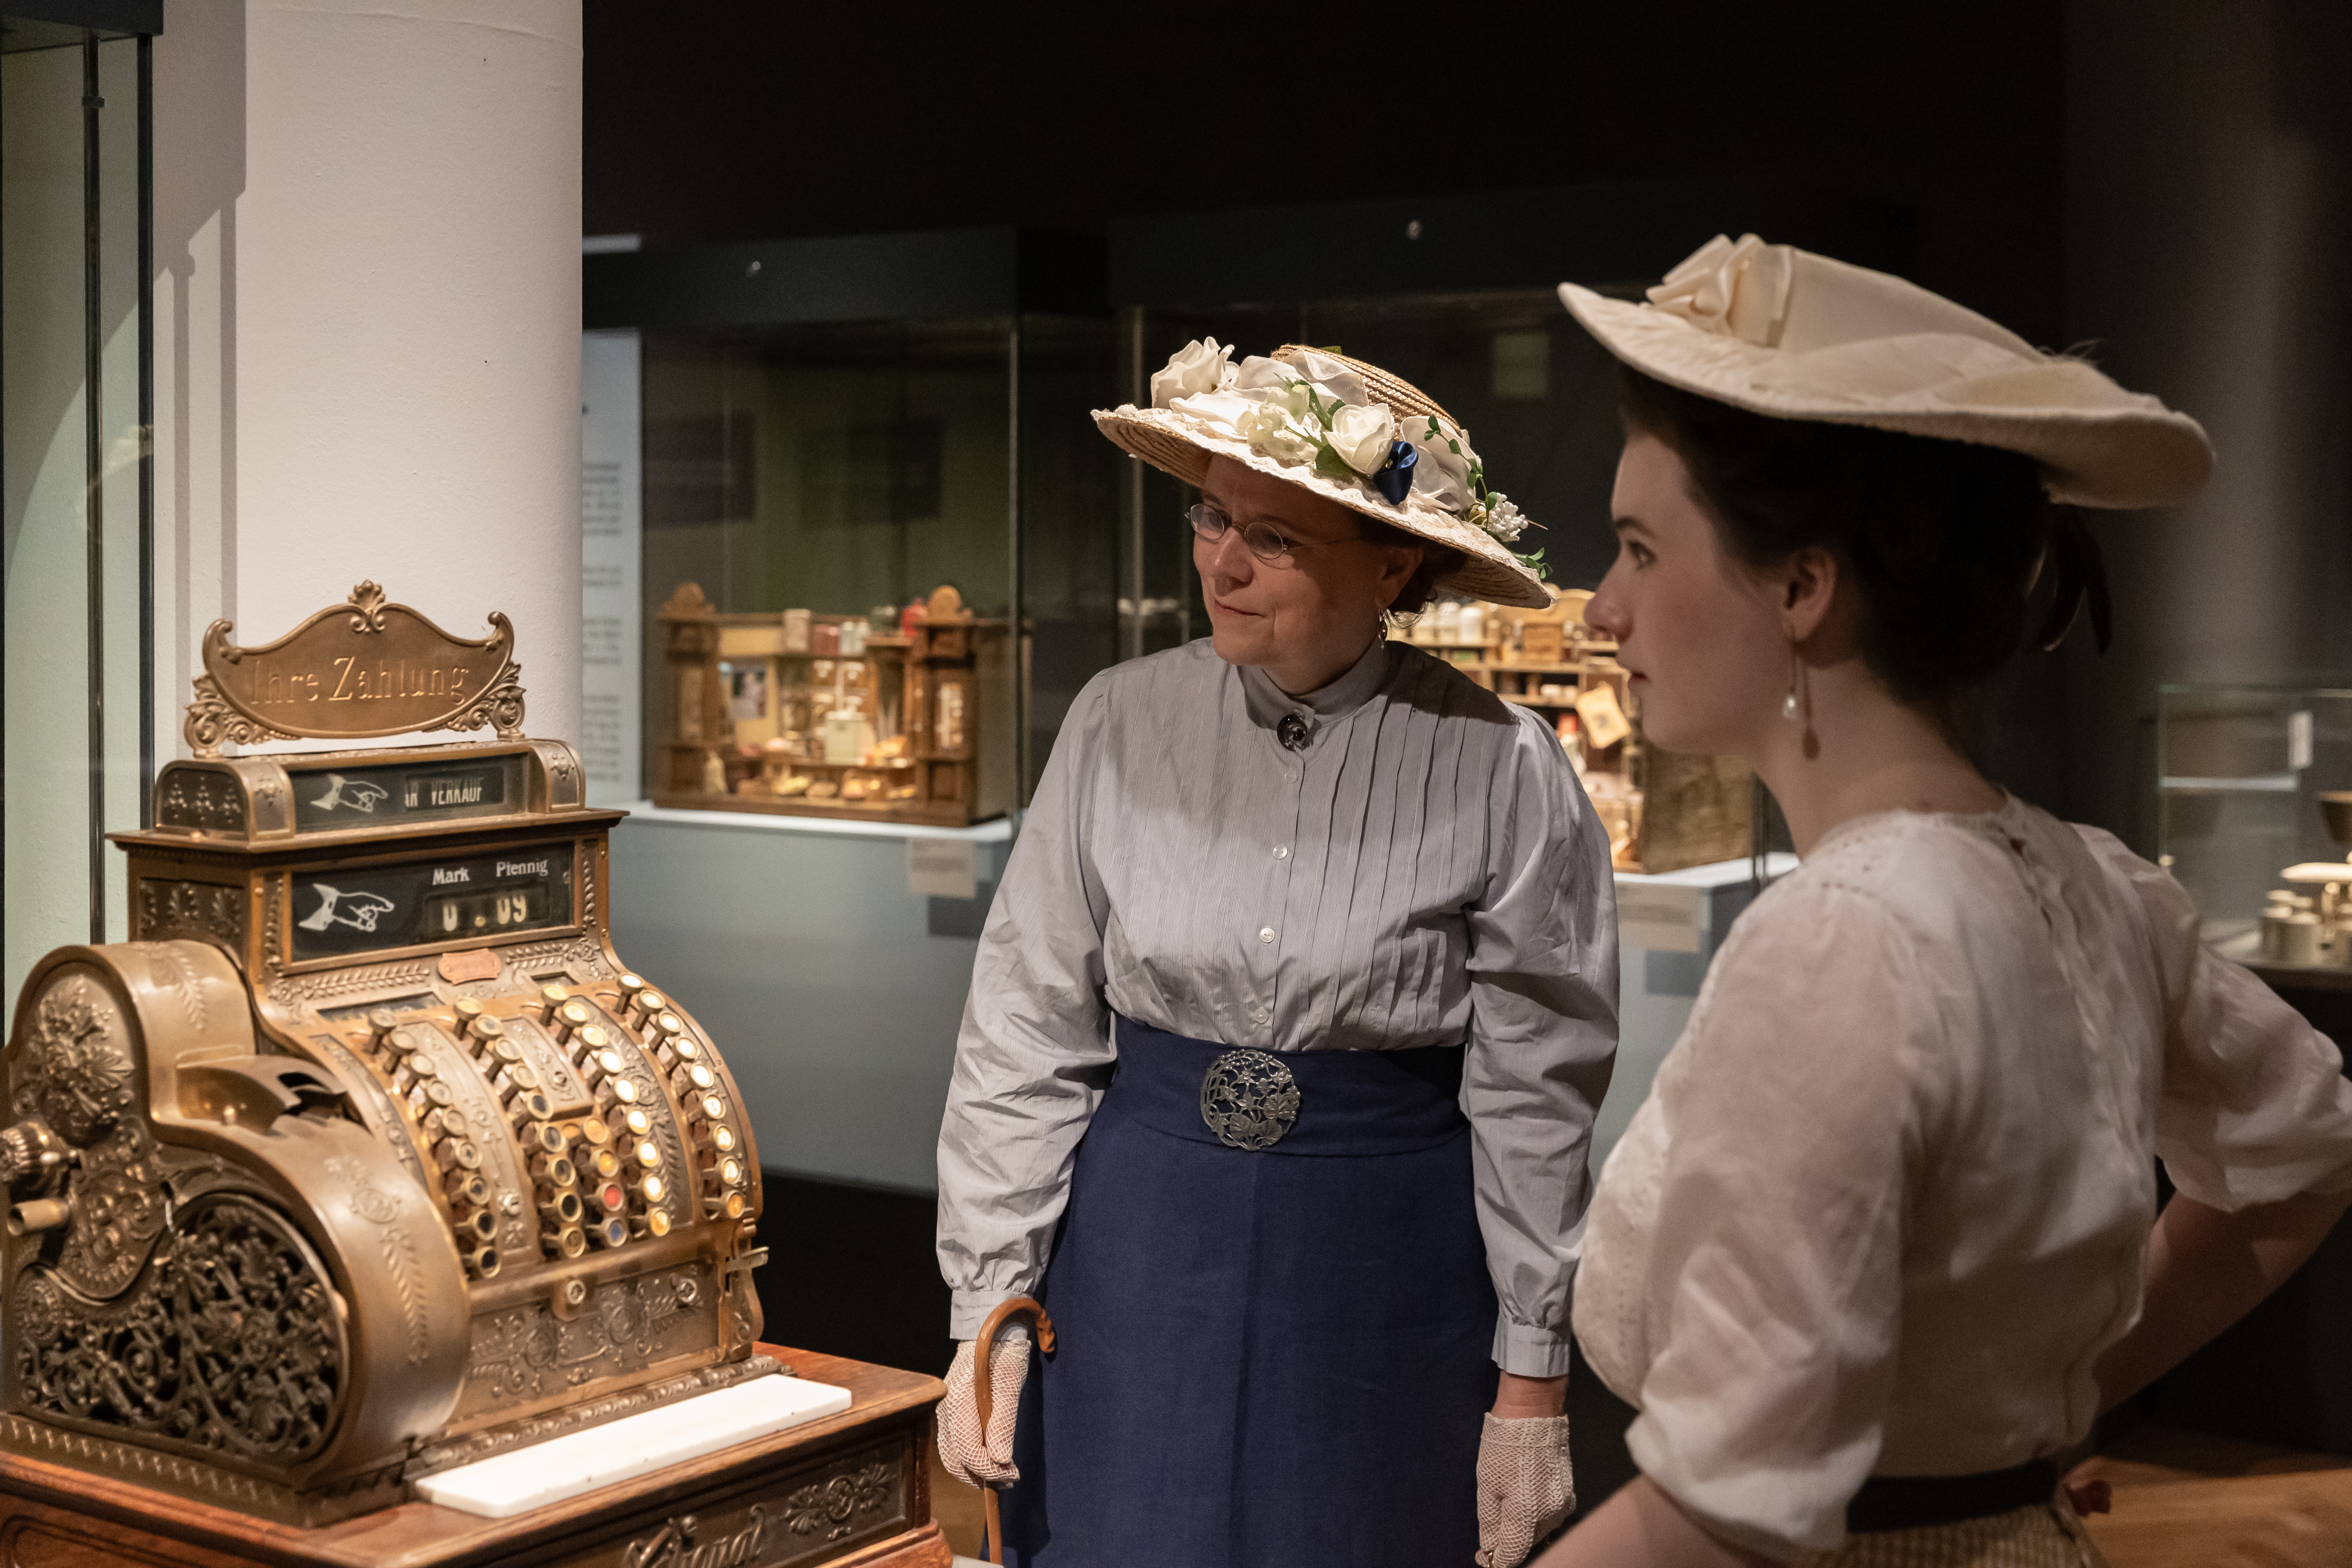 Zwei Besucherinnen im Kostüm betrachten eine Registrierkasse aus dem 19. Jahrhundert